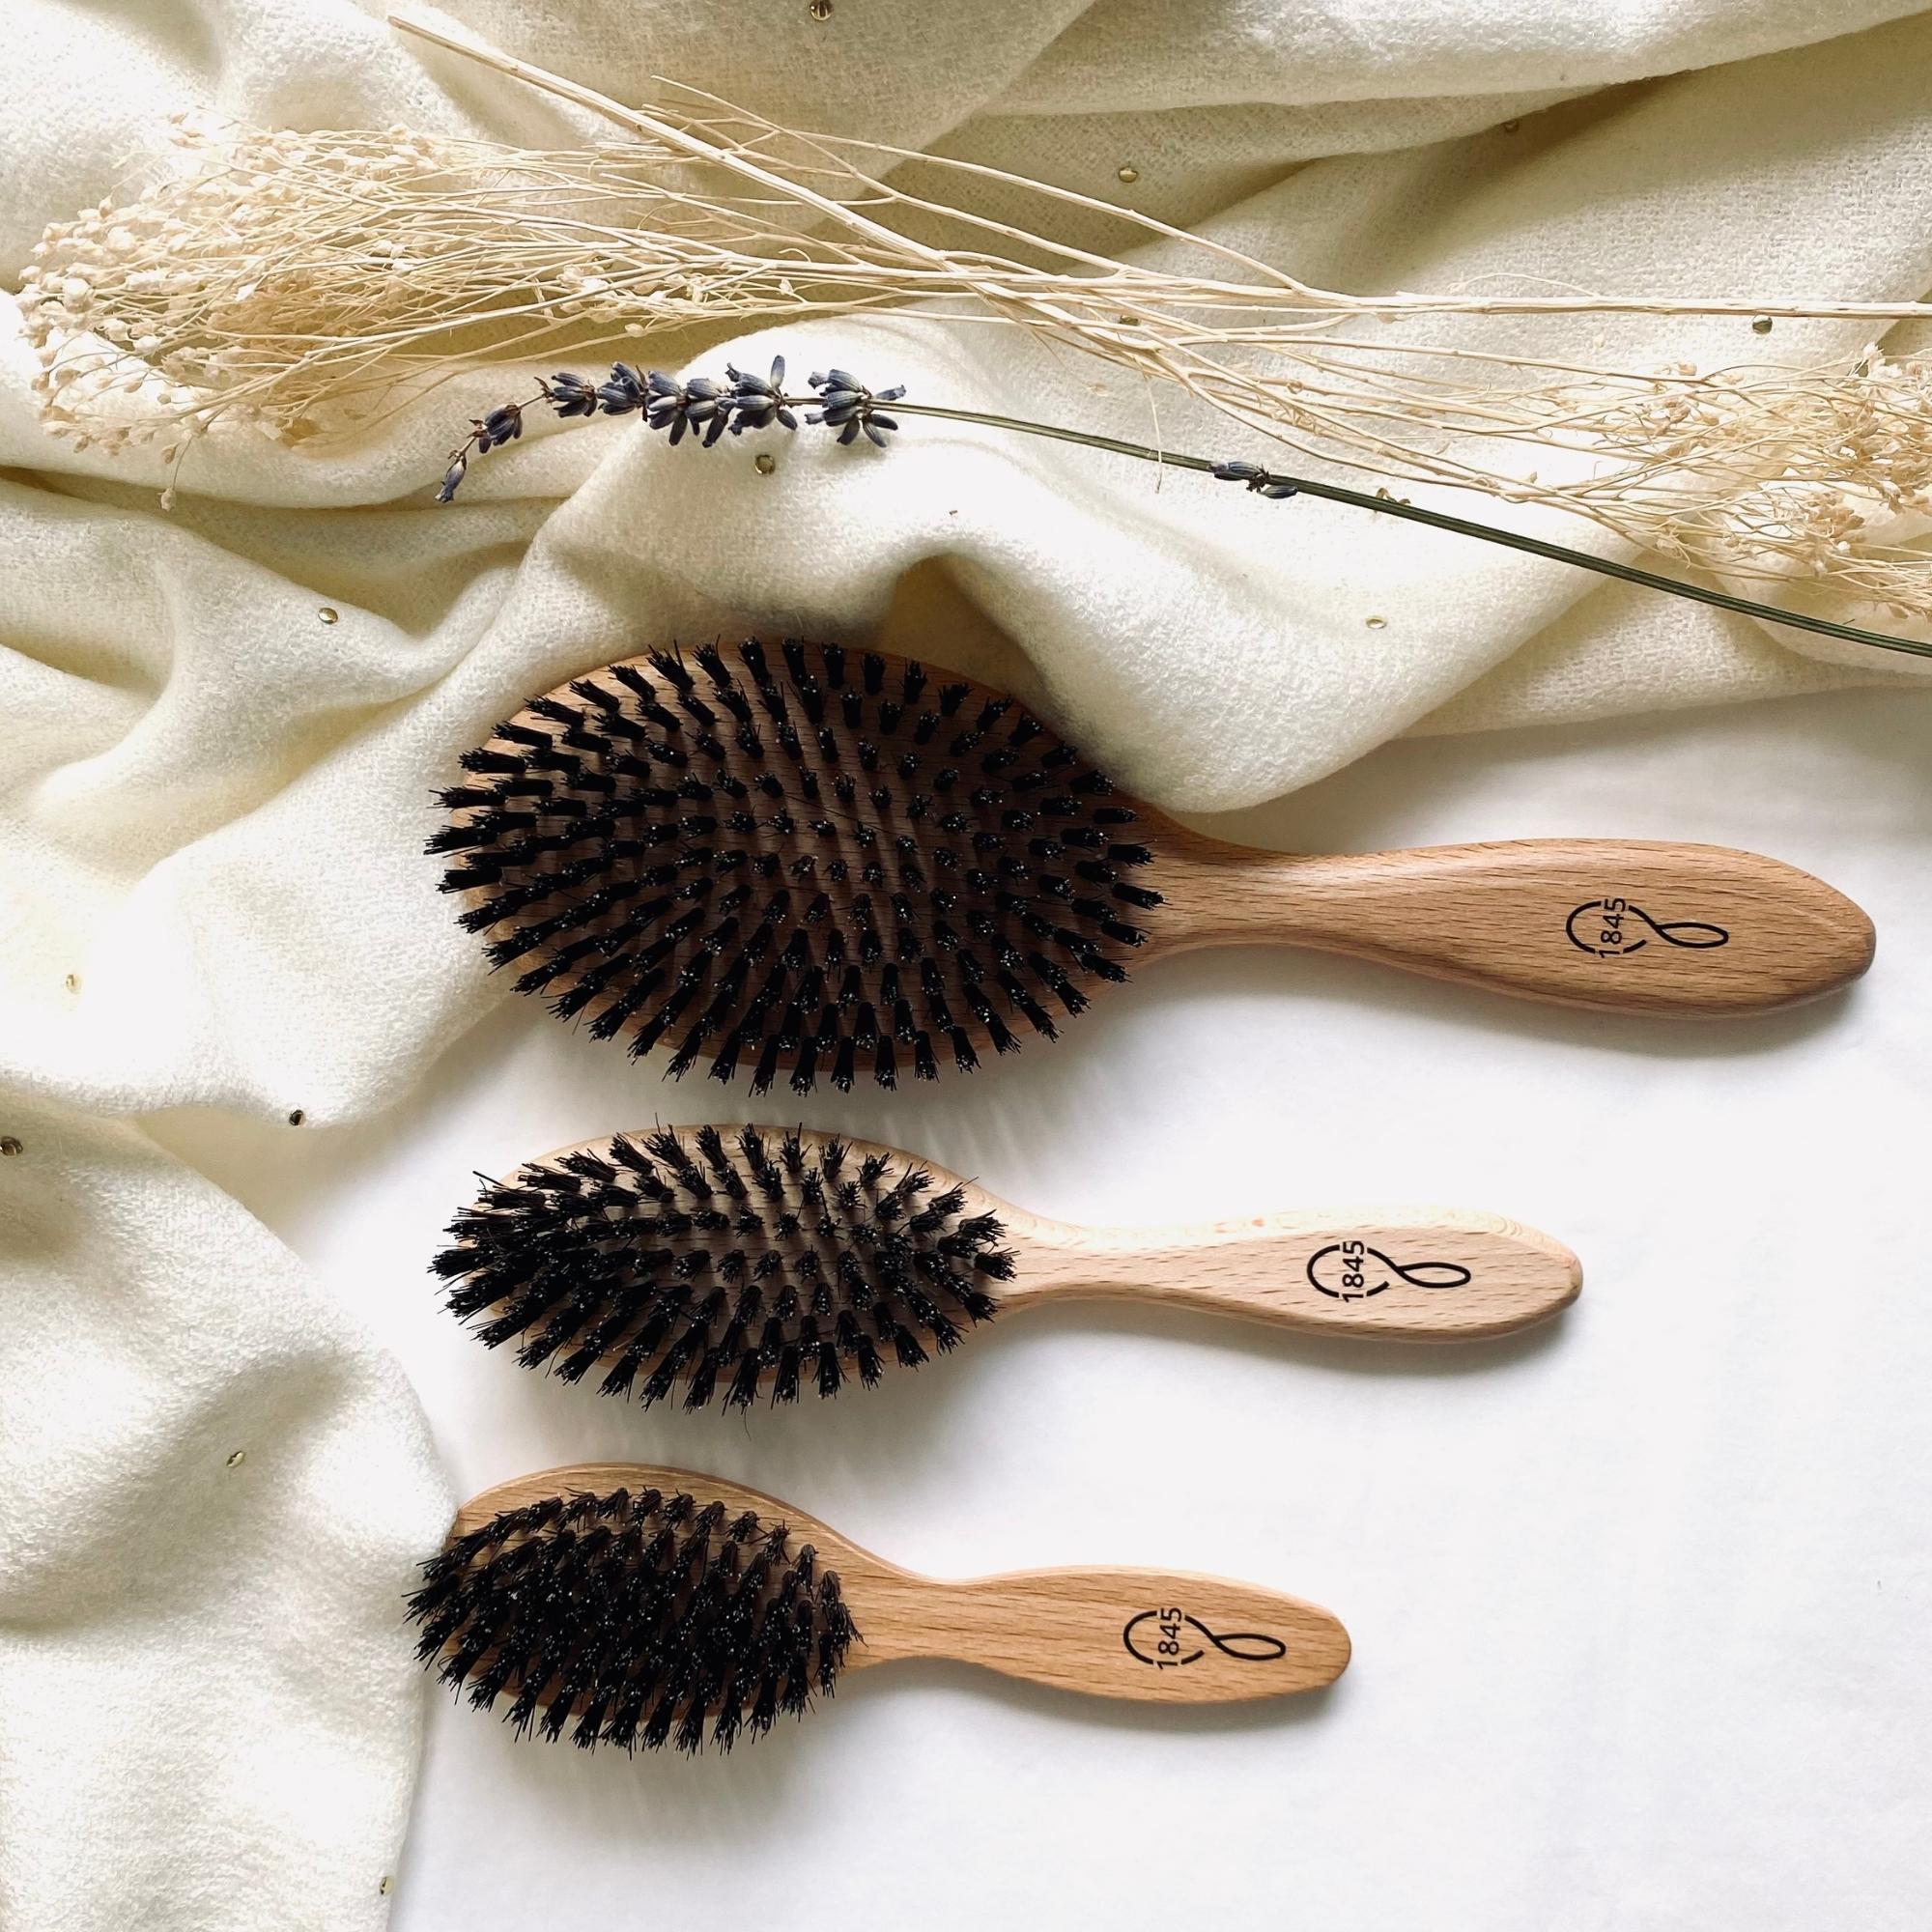 Brosses à cheveux de plusieurs tailles en bois et poils de sanglier made in France